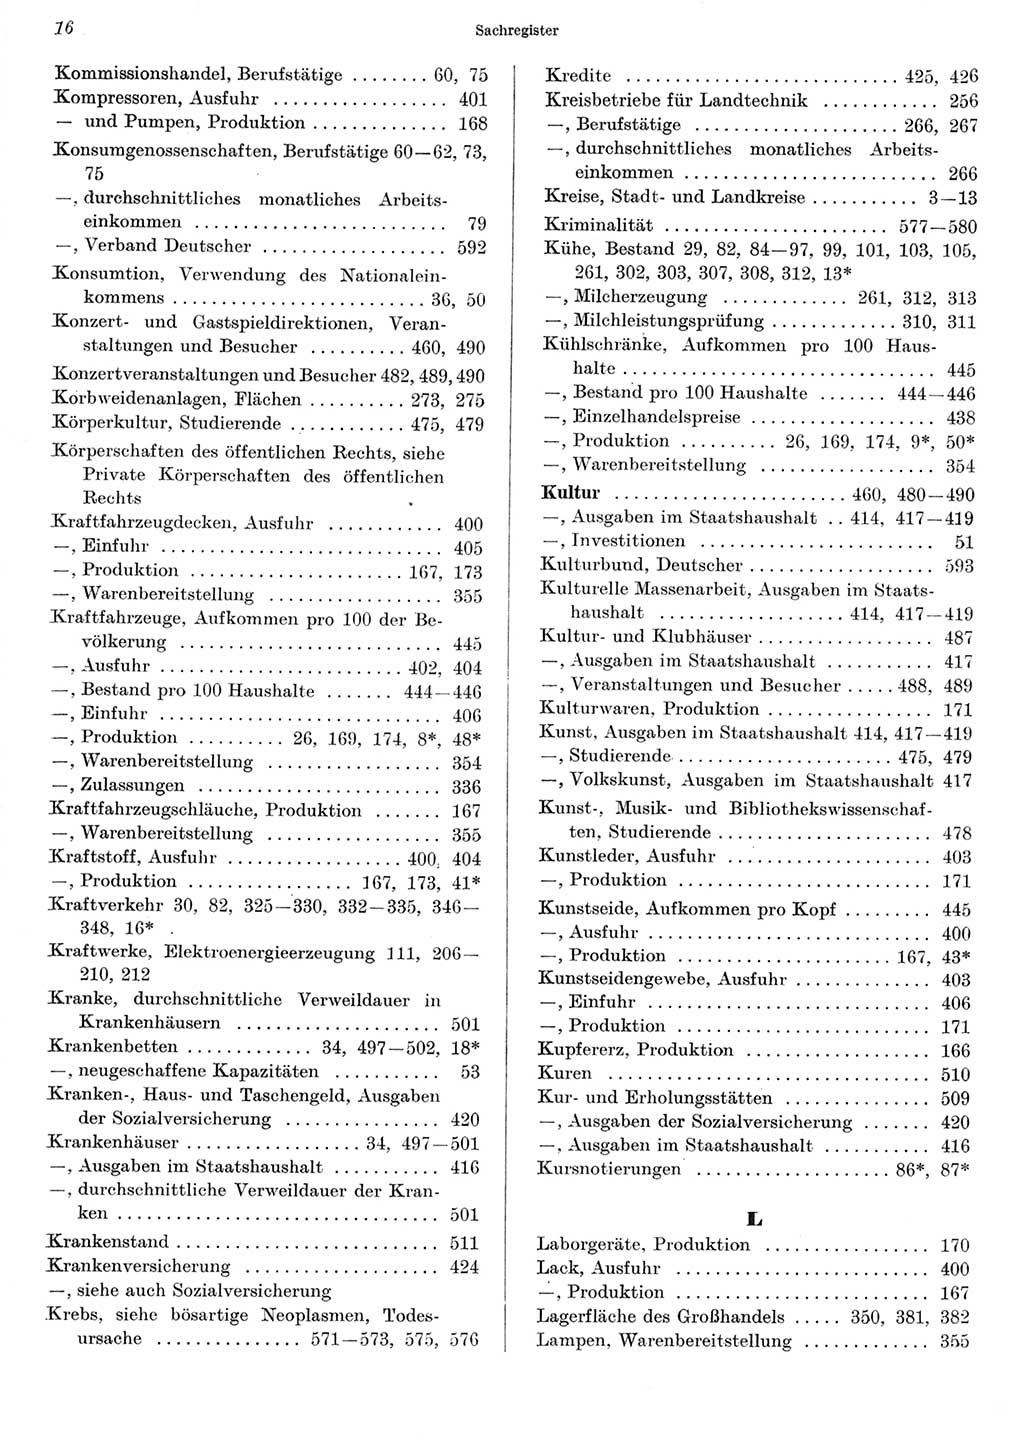 Statistisches Jahrbuch der Deutschen Demokratischen Republik (DDR) 1967, Seite 16 (Stat. Jb. DDR 1967, S. 16)